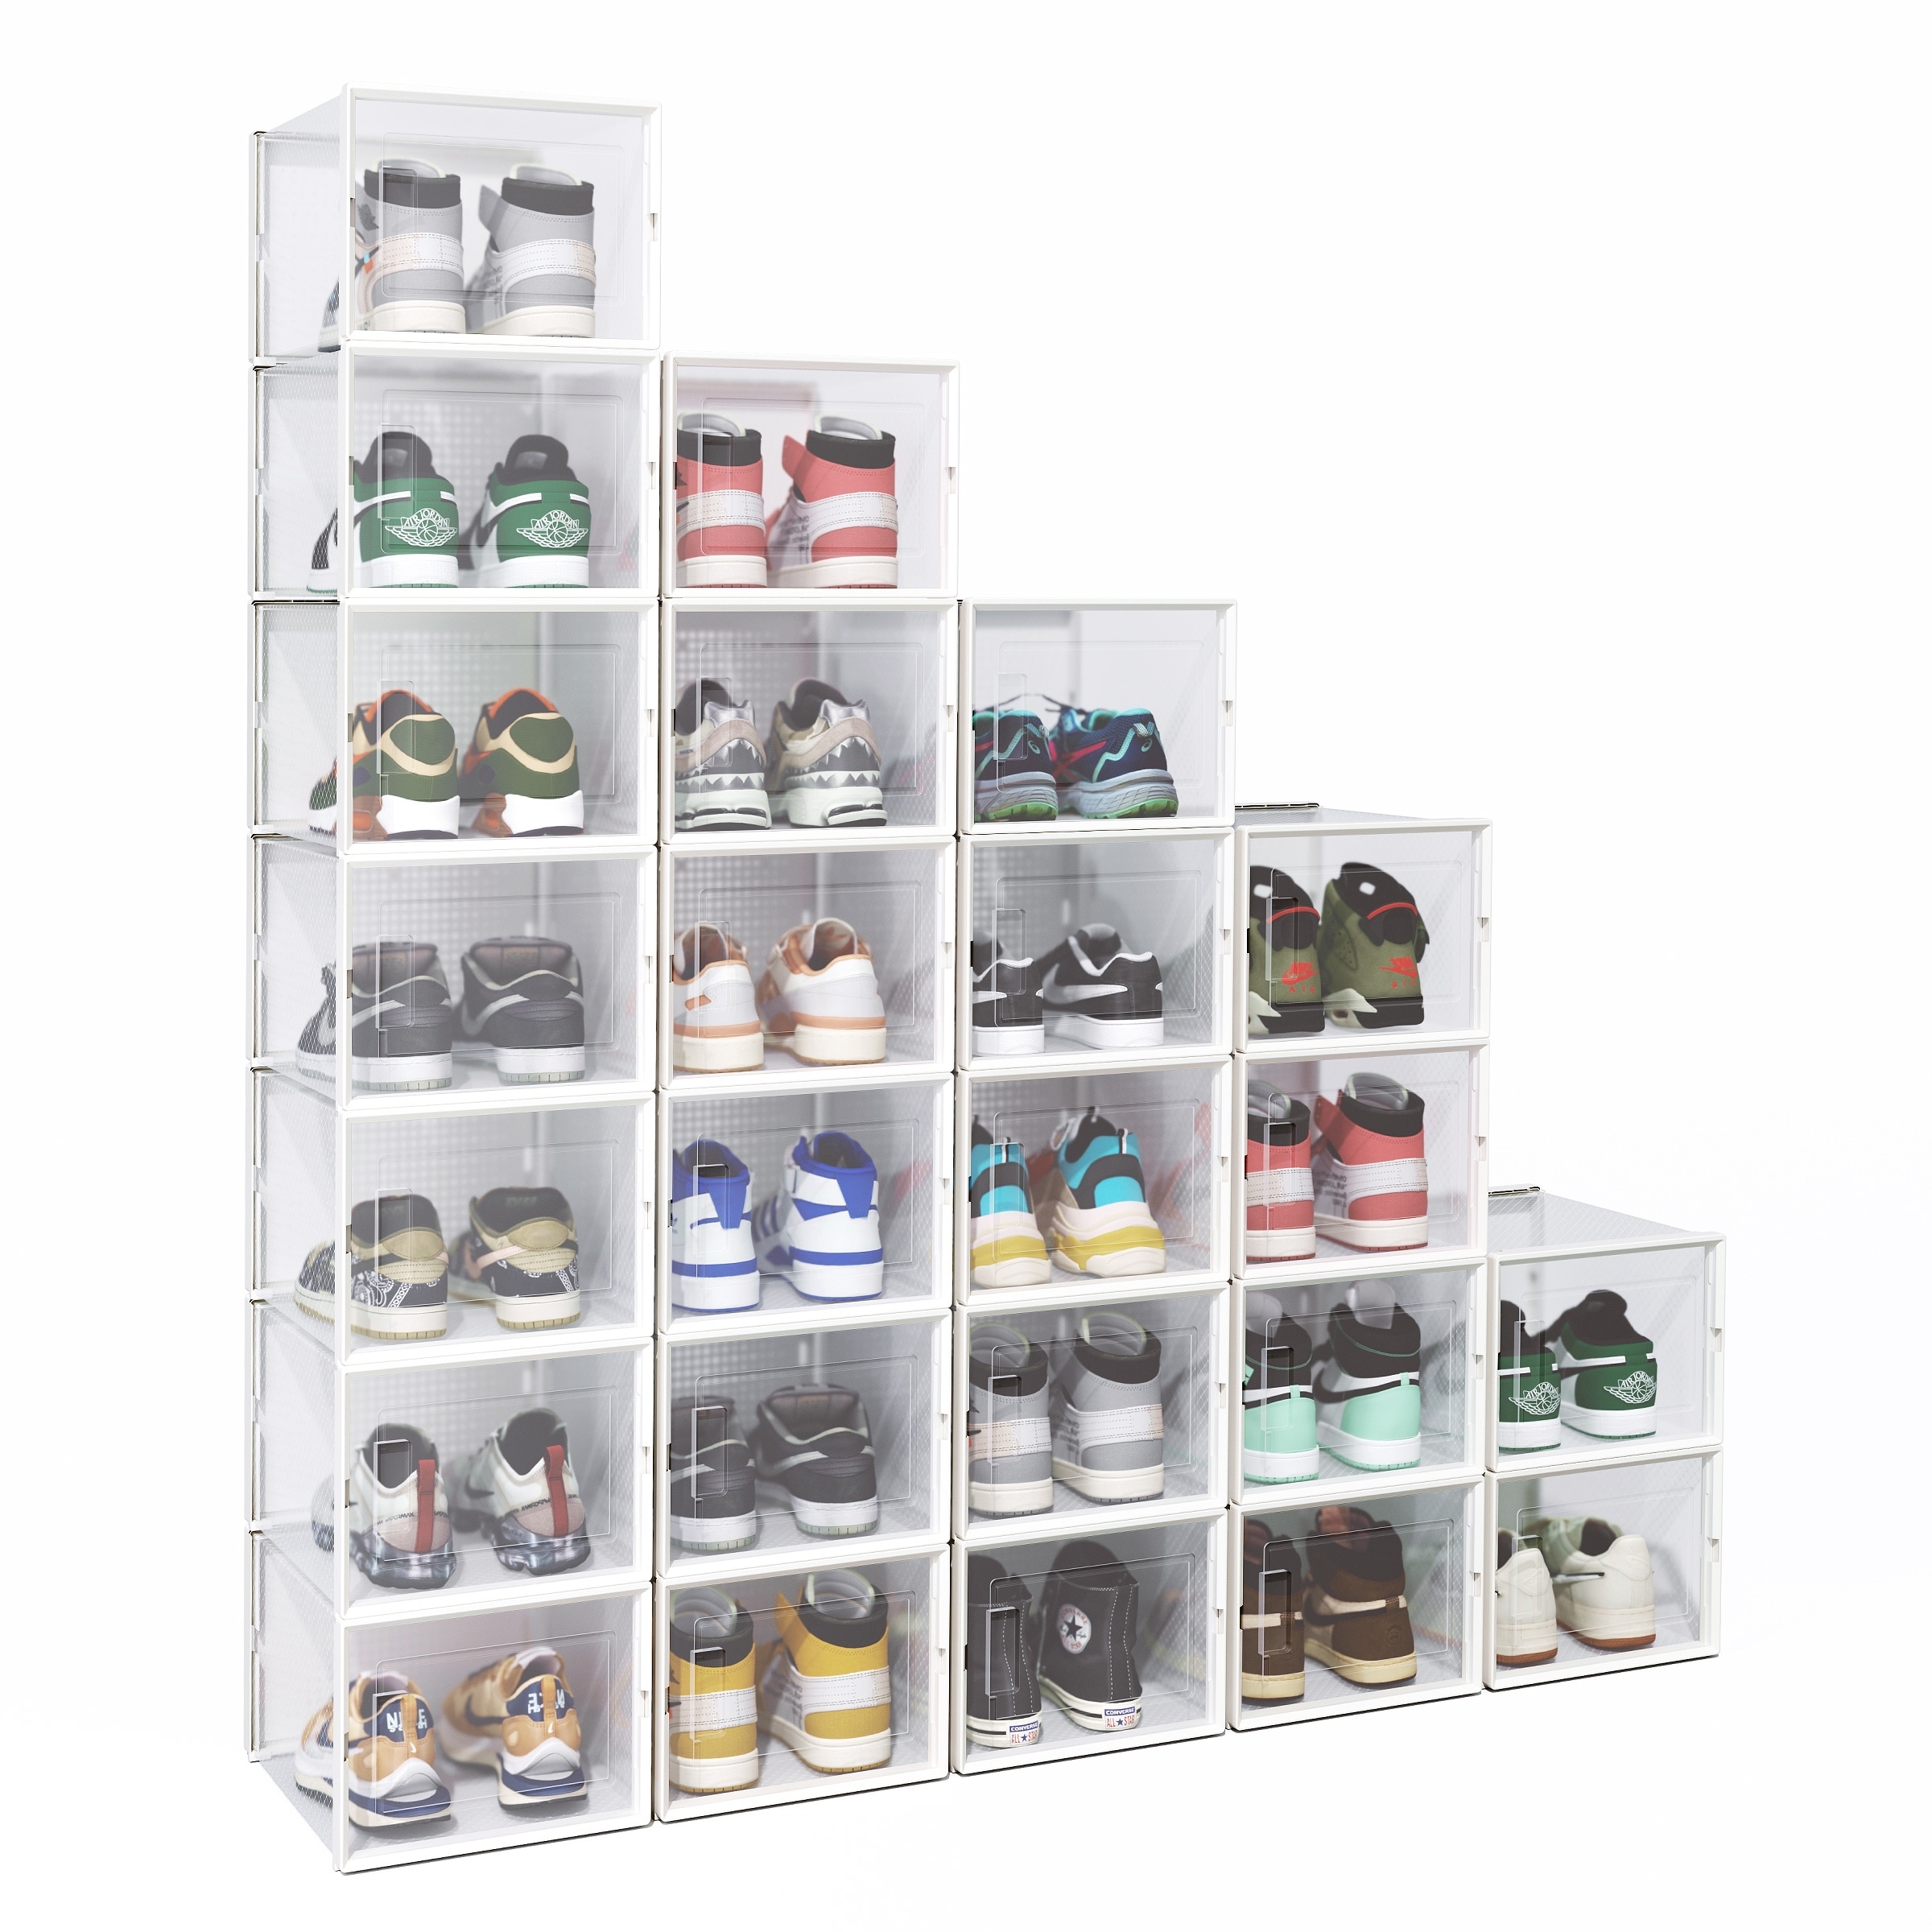 6-Pair Transparent Foldable Stackable Plastic Shoe Boxes